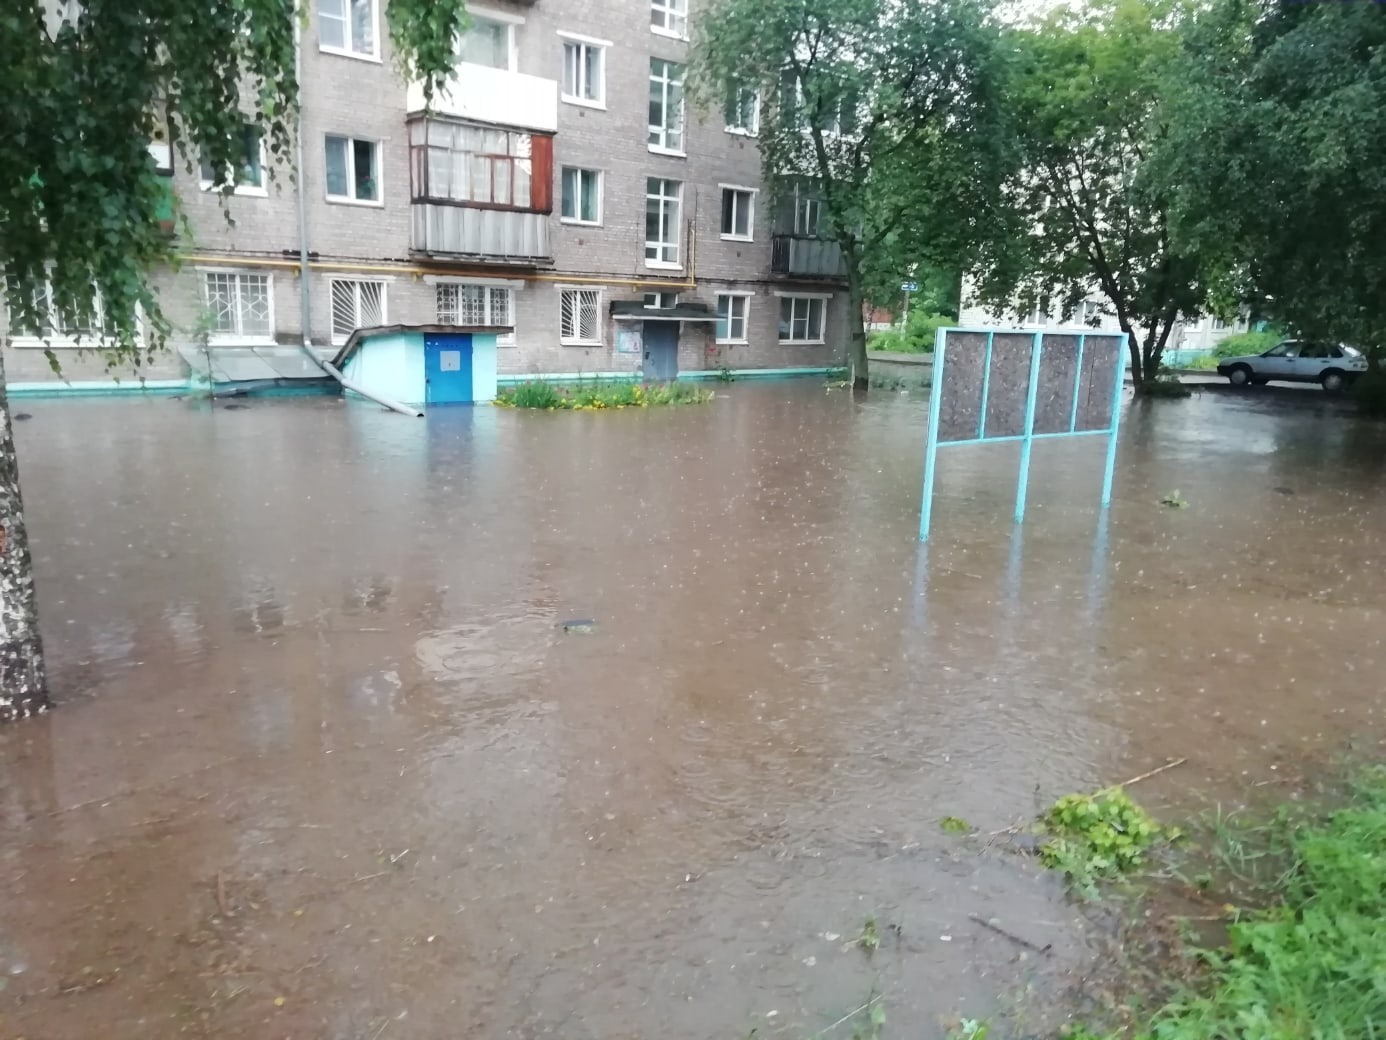 Купить в ижевске сегодня. Ливень в Ижевске. Потоп в Ижевске. Ижевск затопило вчера. Потоп в Ижевске сегодня.